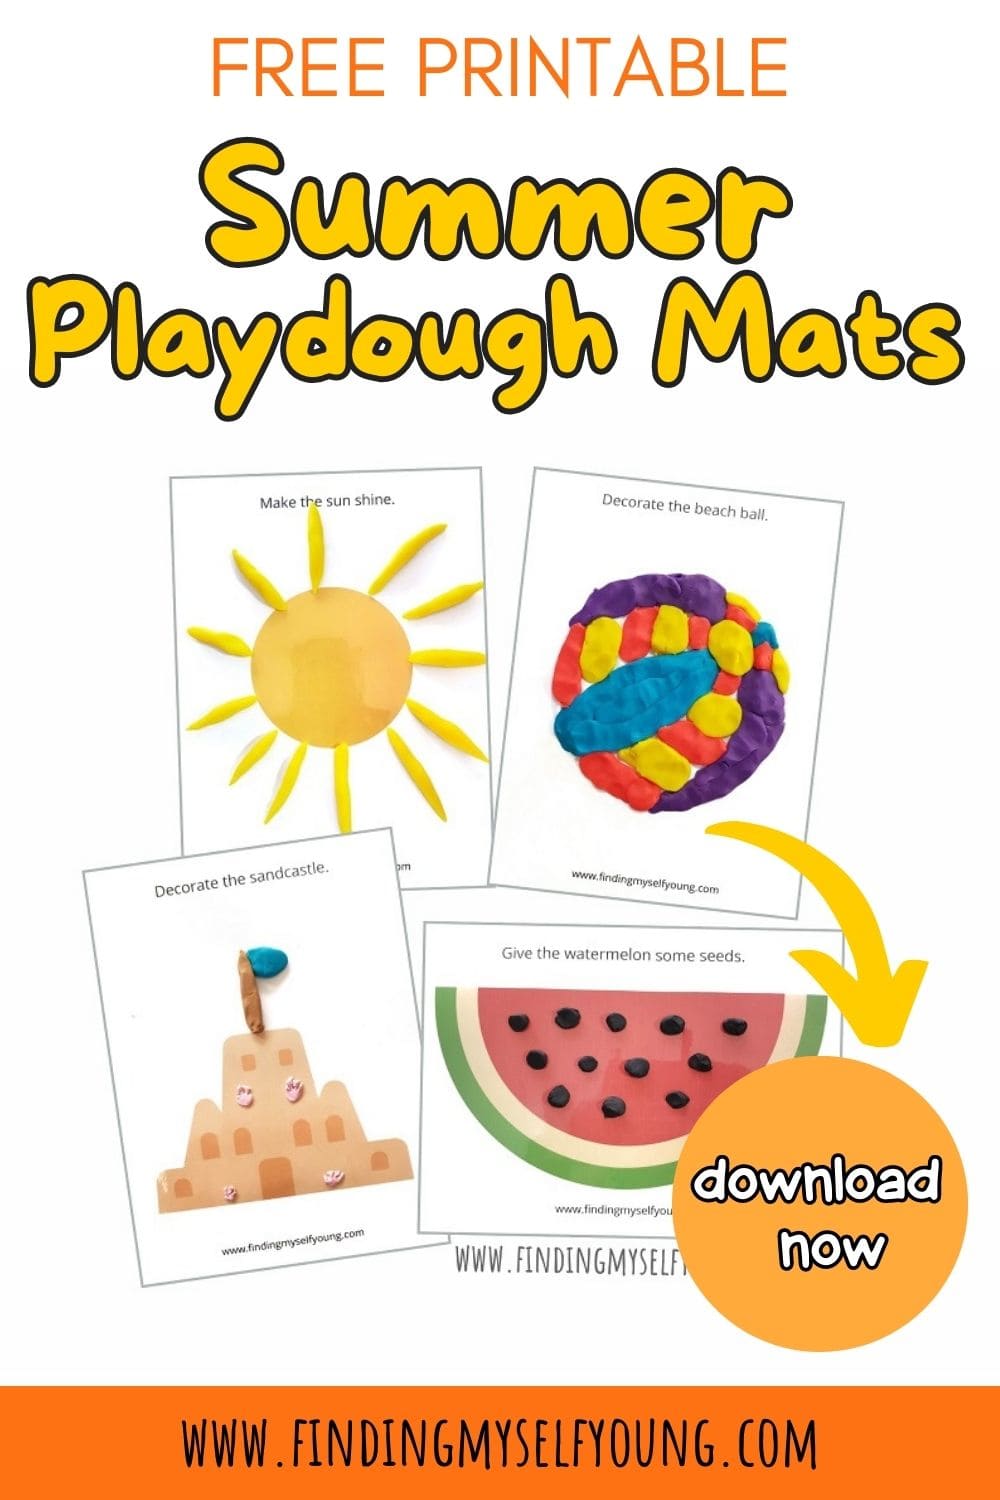 Free Printable Summer Playdough Mats - Active Littles